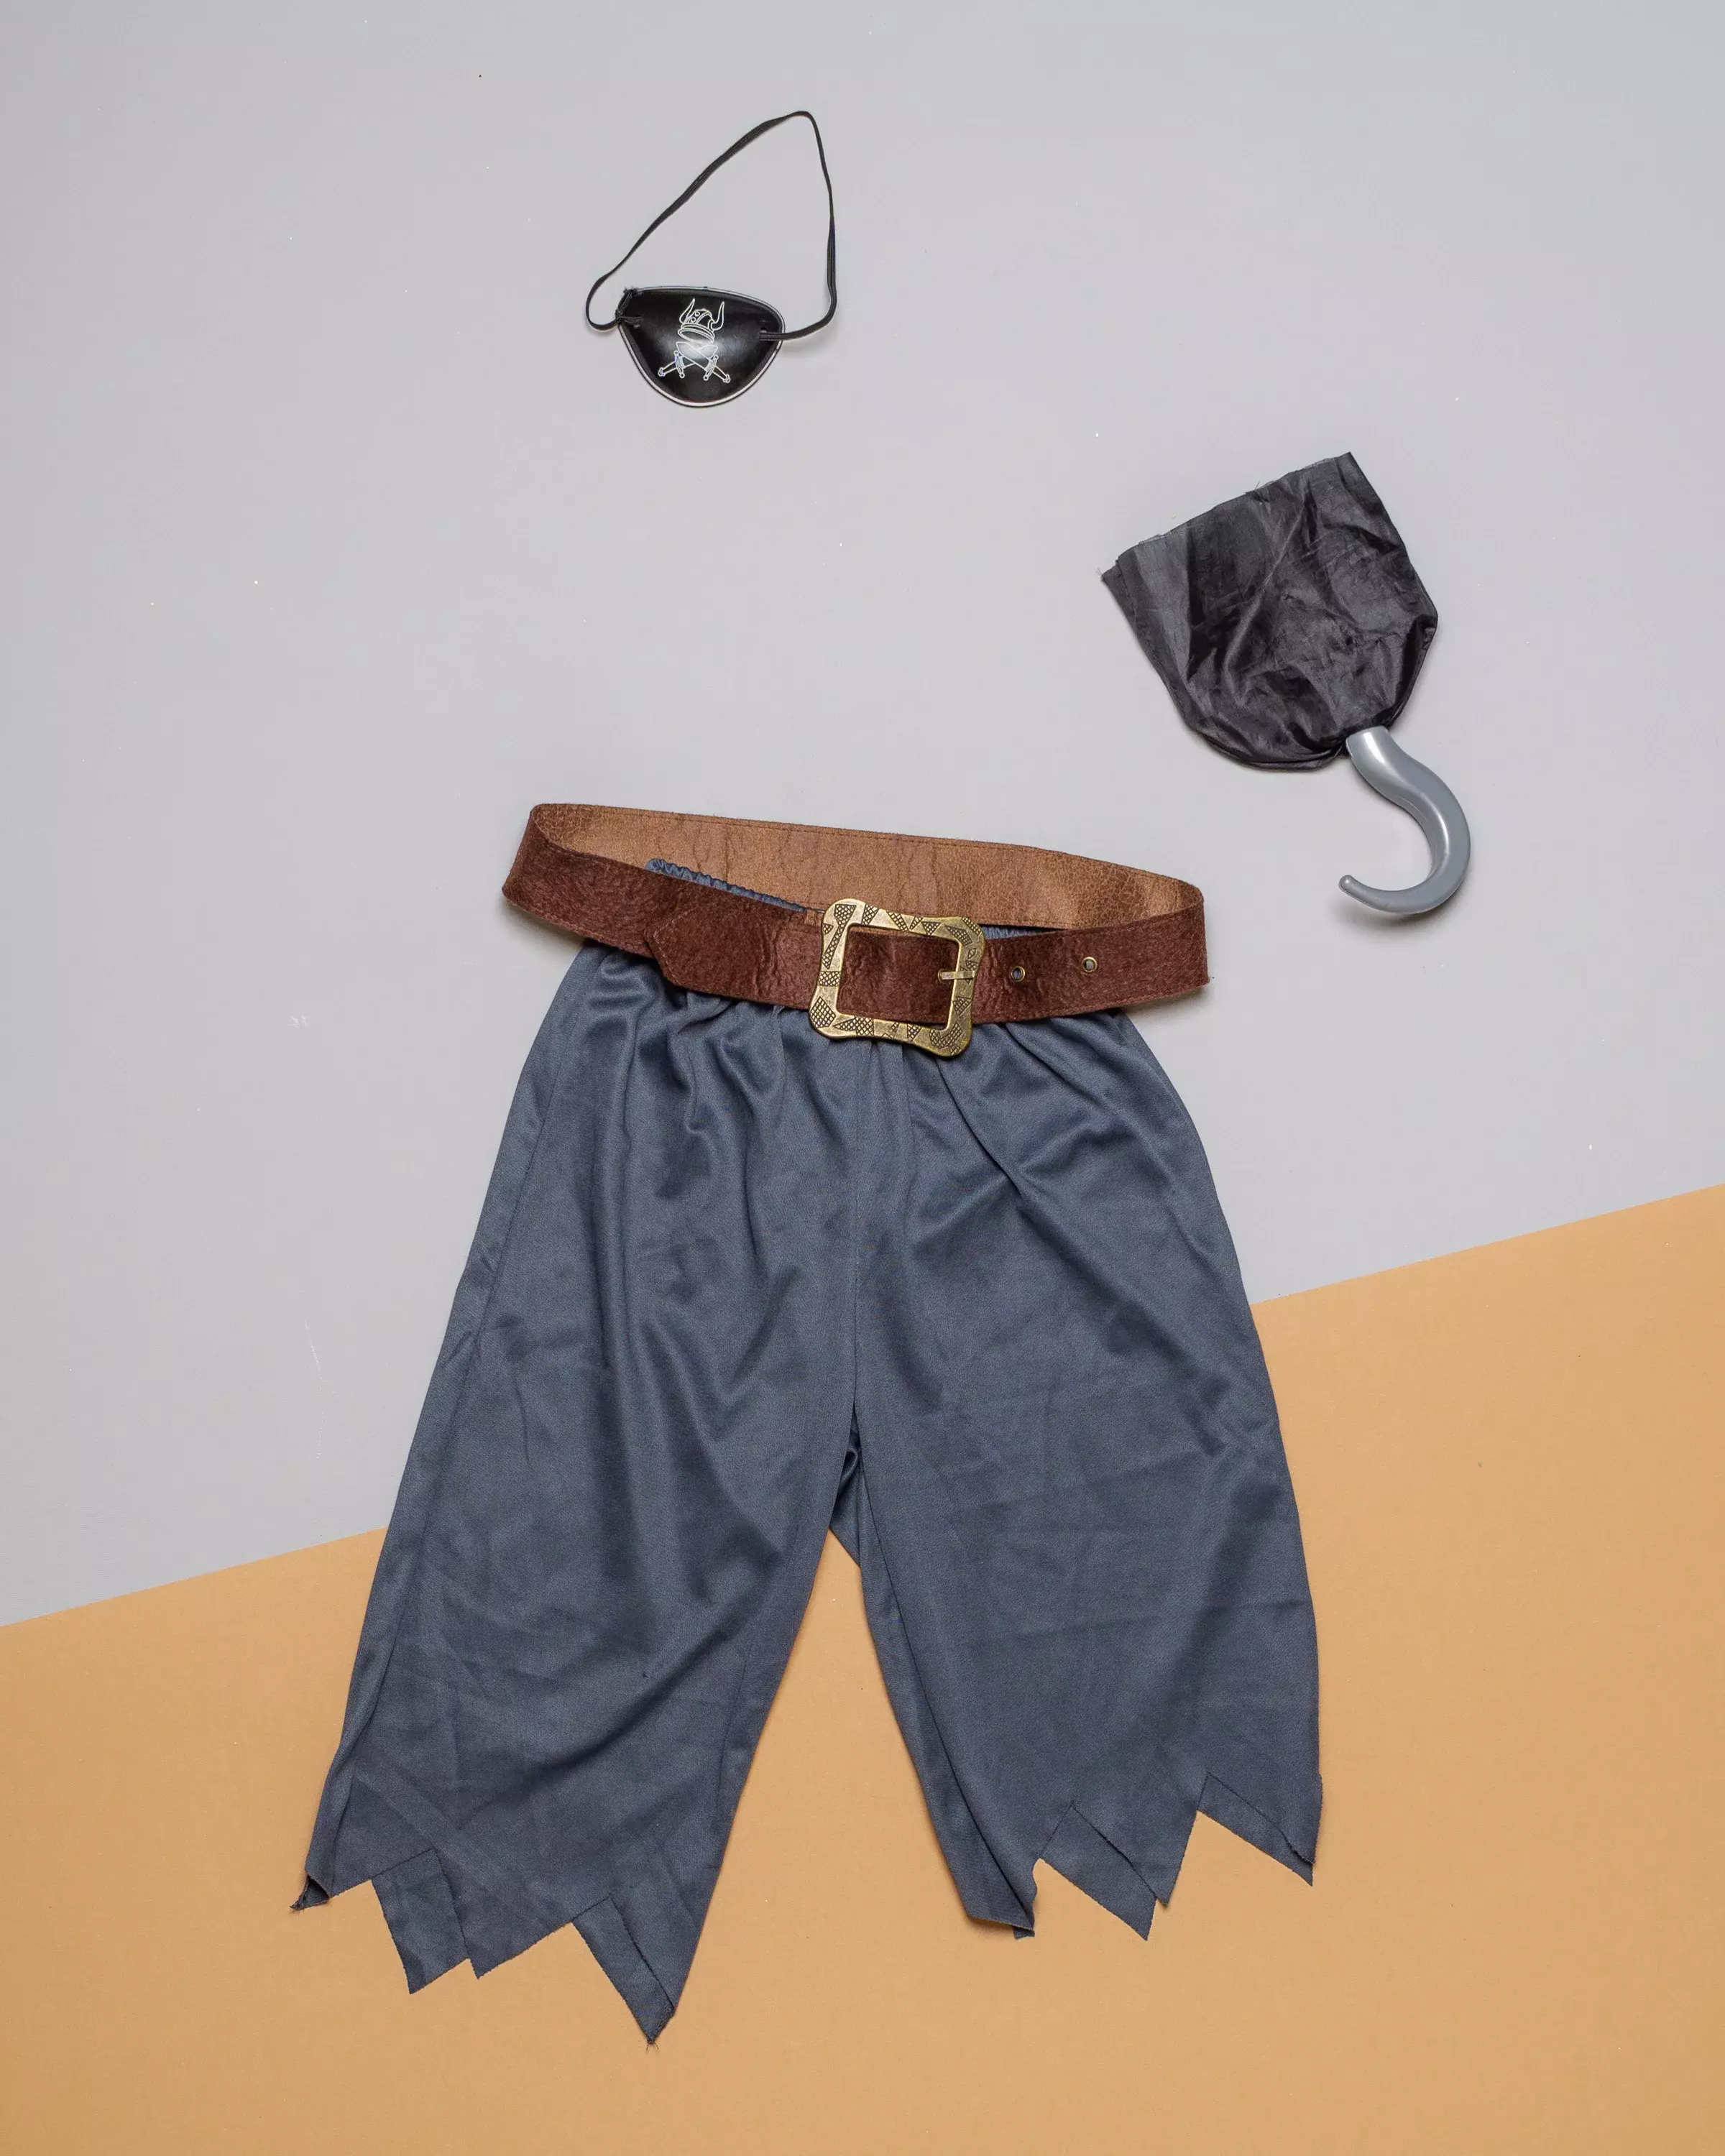 Piraten Hose und Accessoires für Unisex - Kostüm mit Haken, Augenklappe und Gürtel